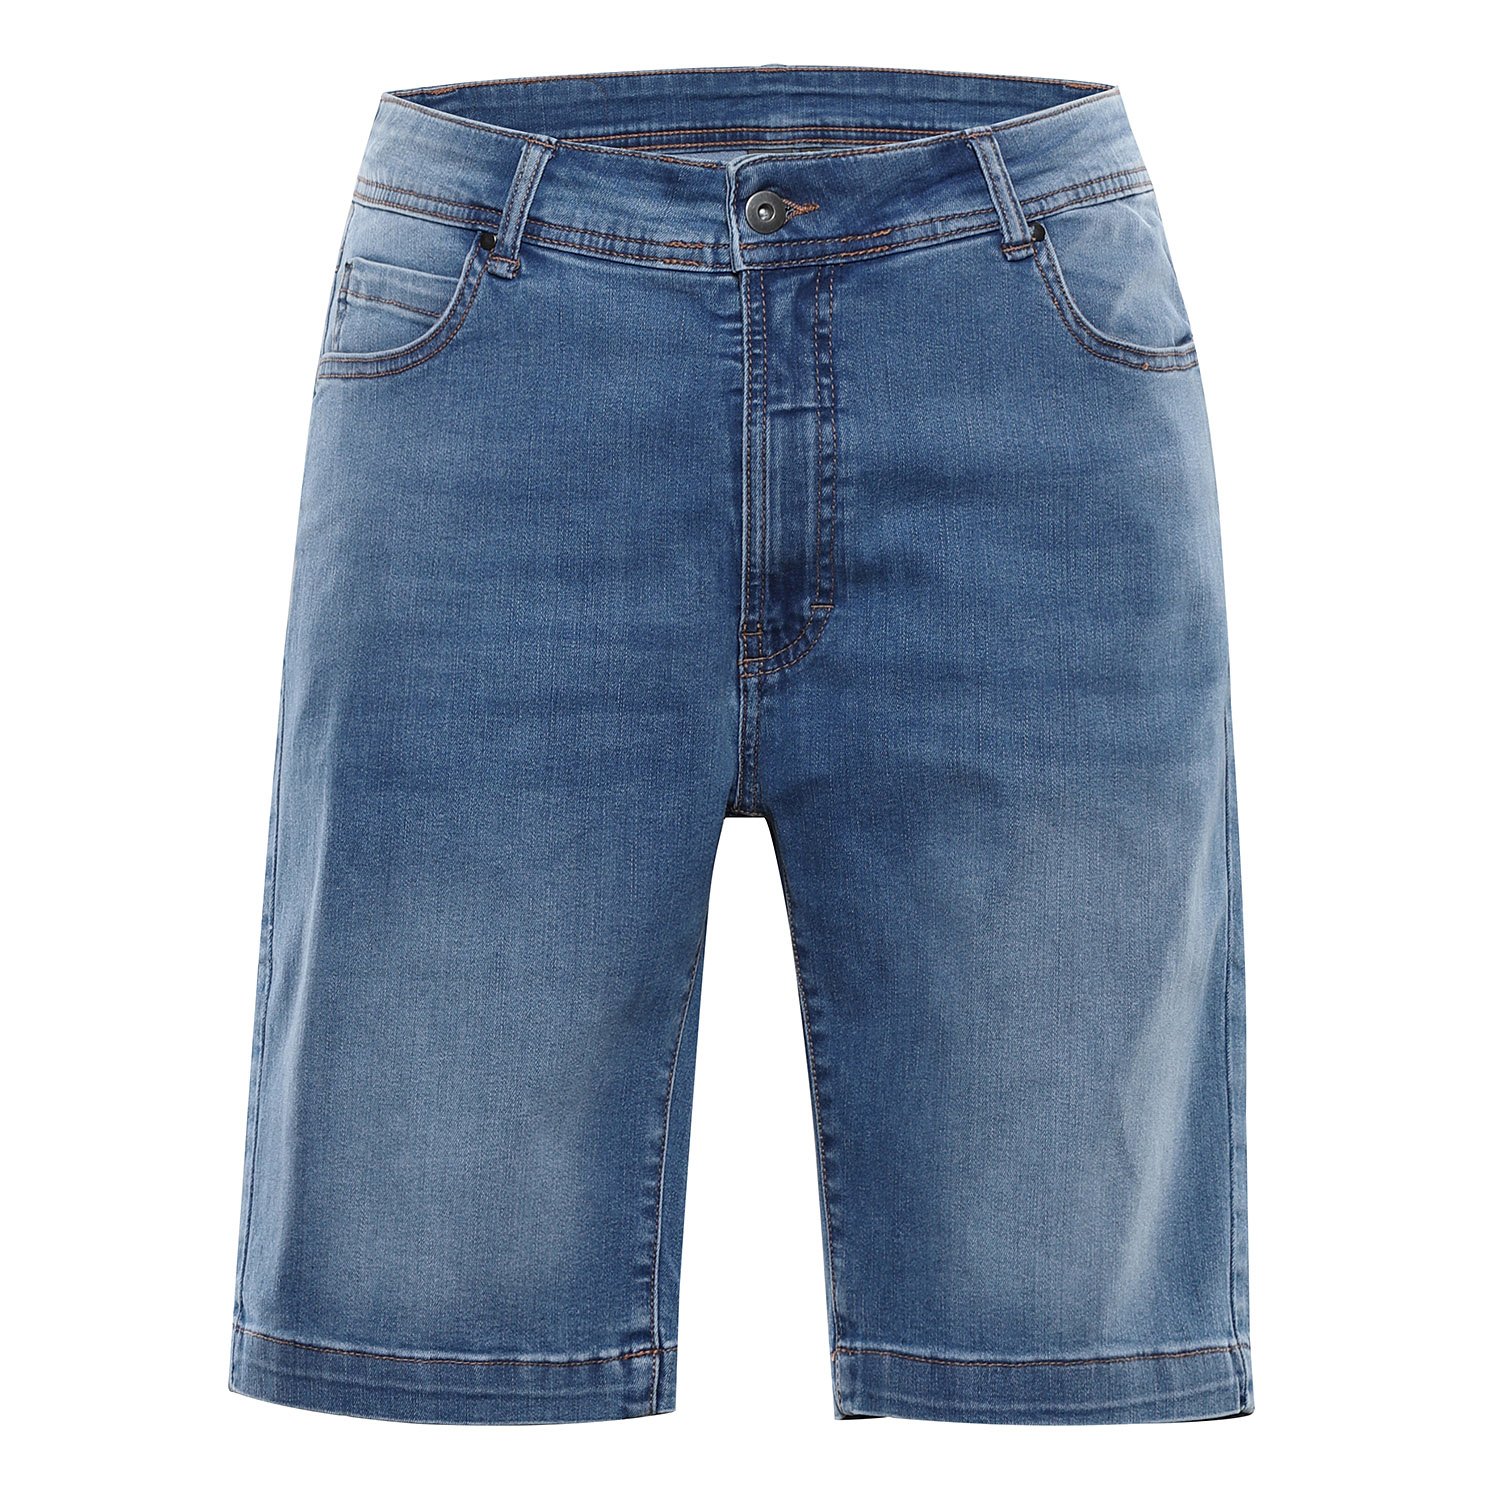 Men's denim shorts nax NAX FEDAB dk.metal blue